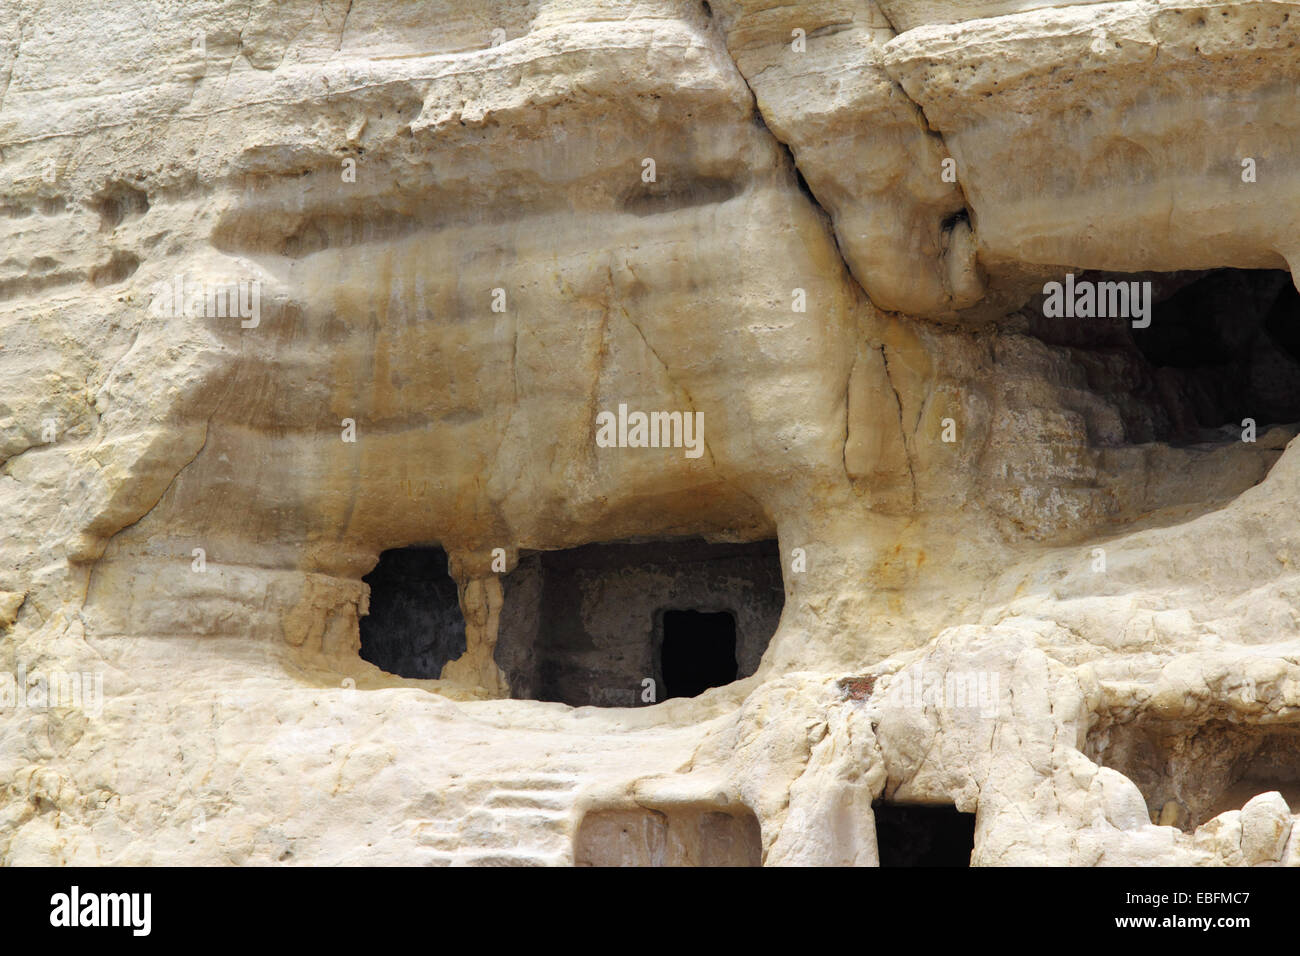 Matala auf der griechischen Insel Kreta ist berühmt für die künstliche Höhlen in den Felsen gehauen geworden. Gräber in den Höhlen gefunden Stockfoto